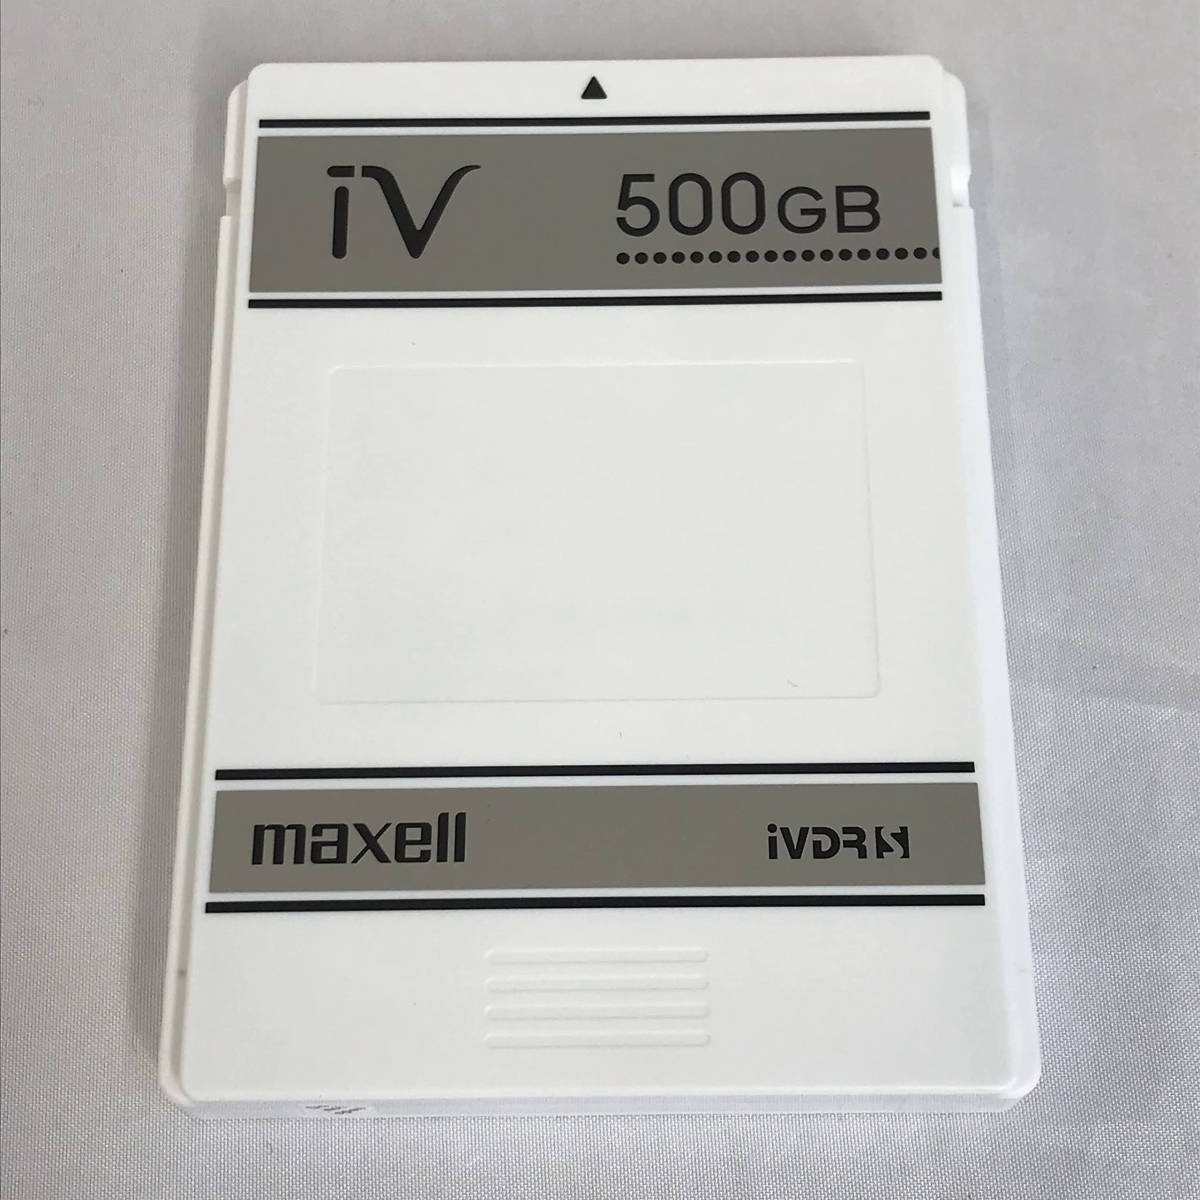 maxell ハードディスクIVDR 容量500GB 日立薄型テレビ「Wooo」対応